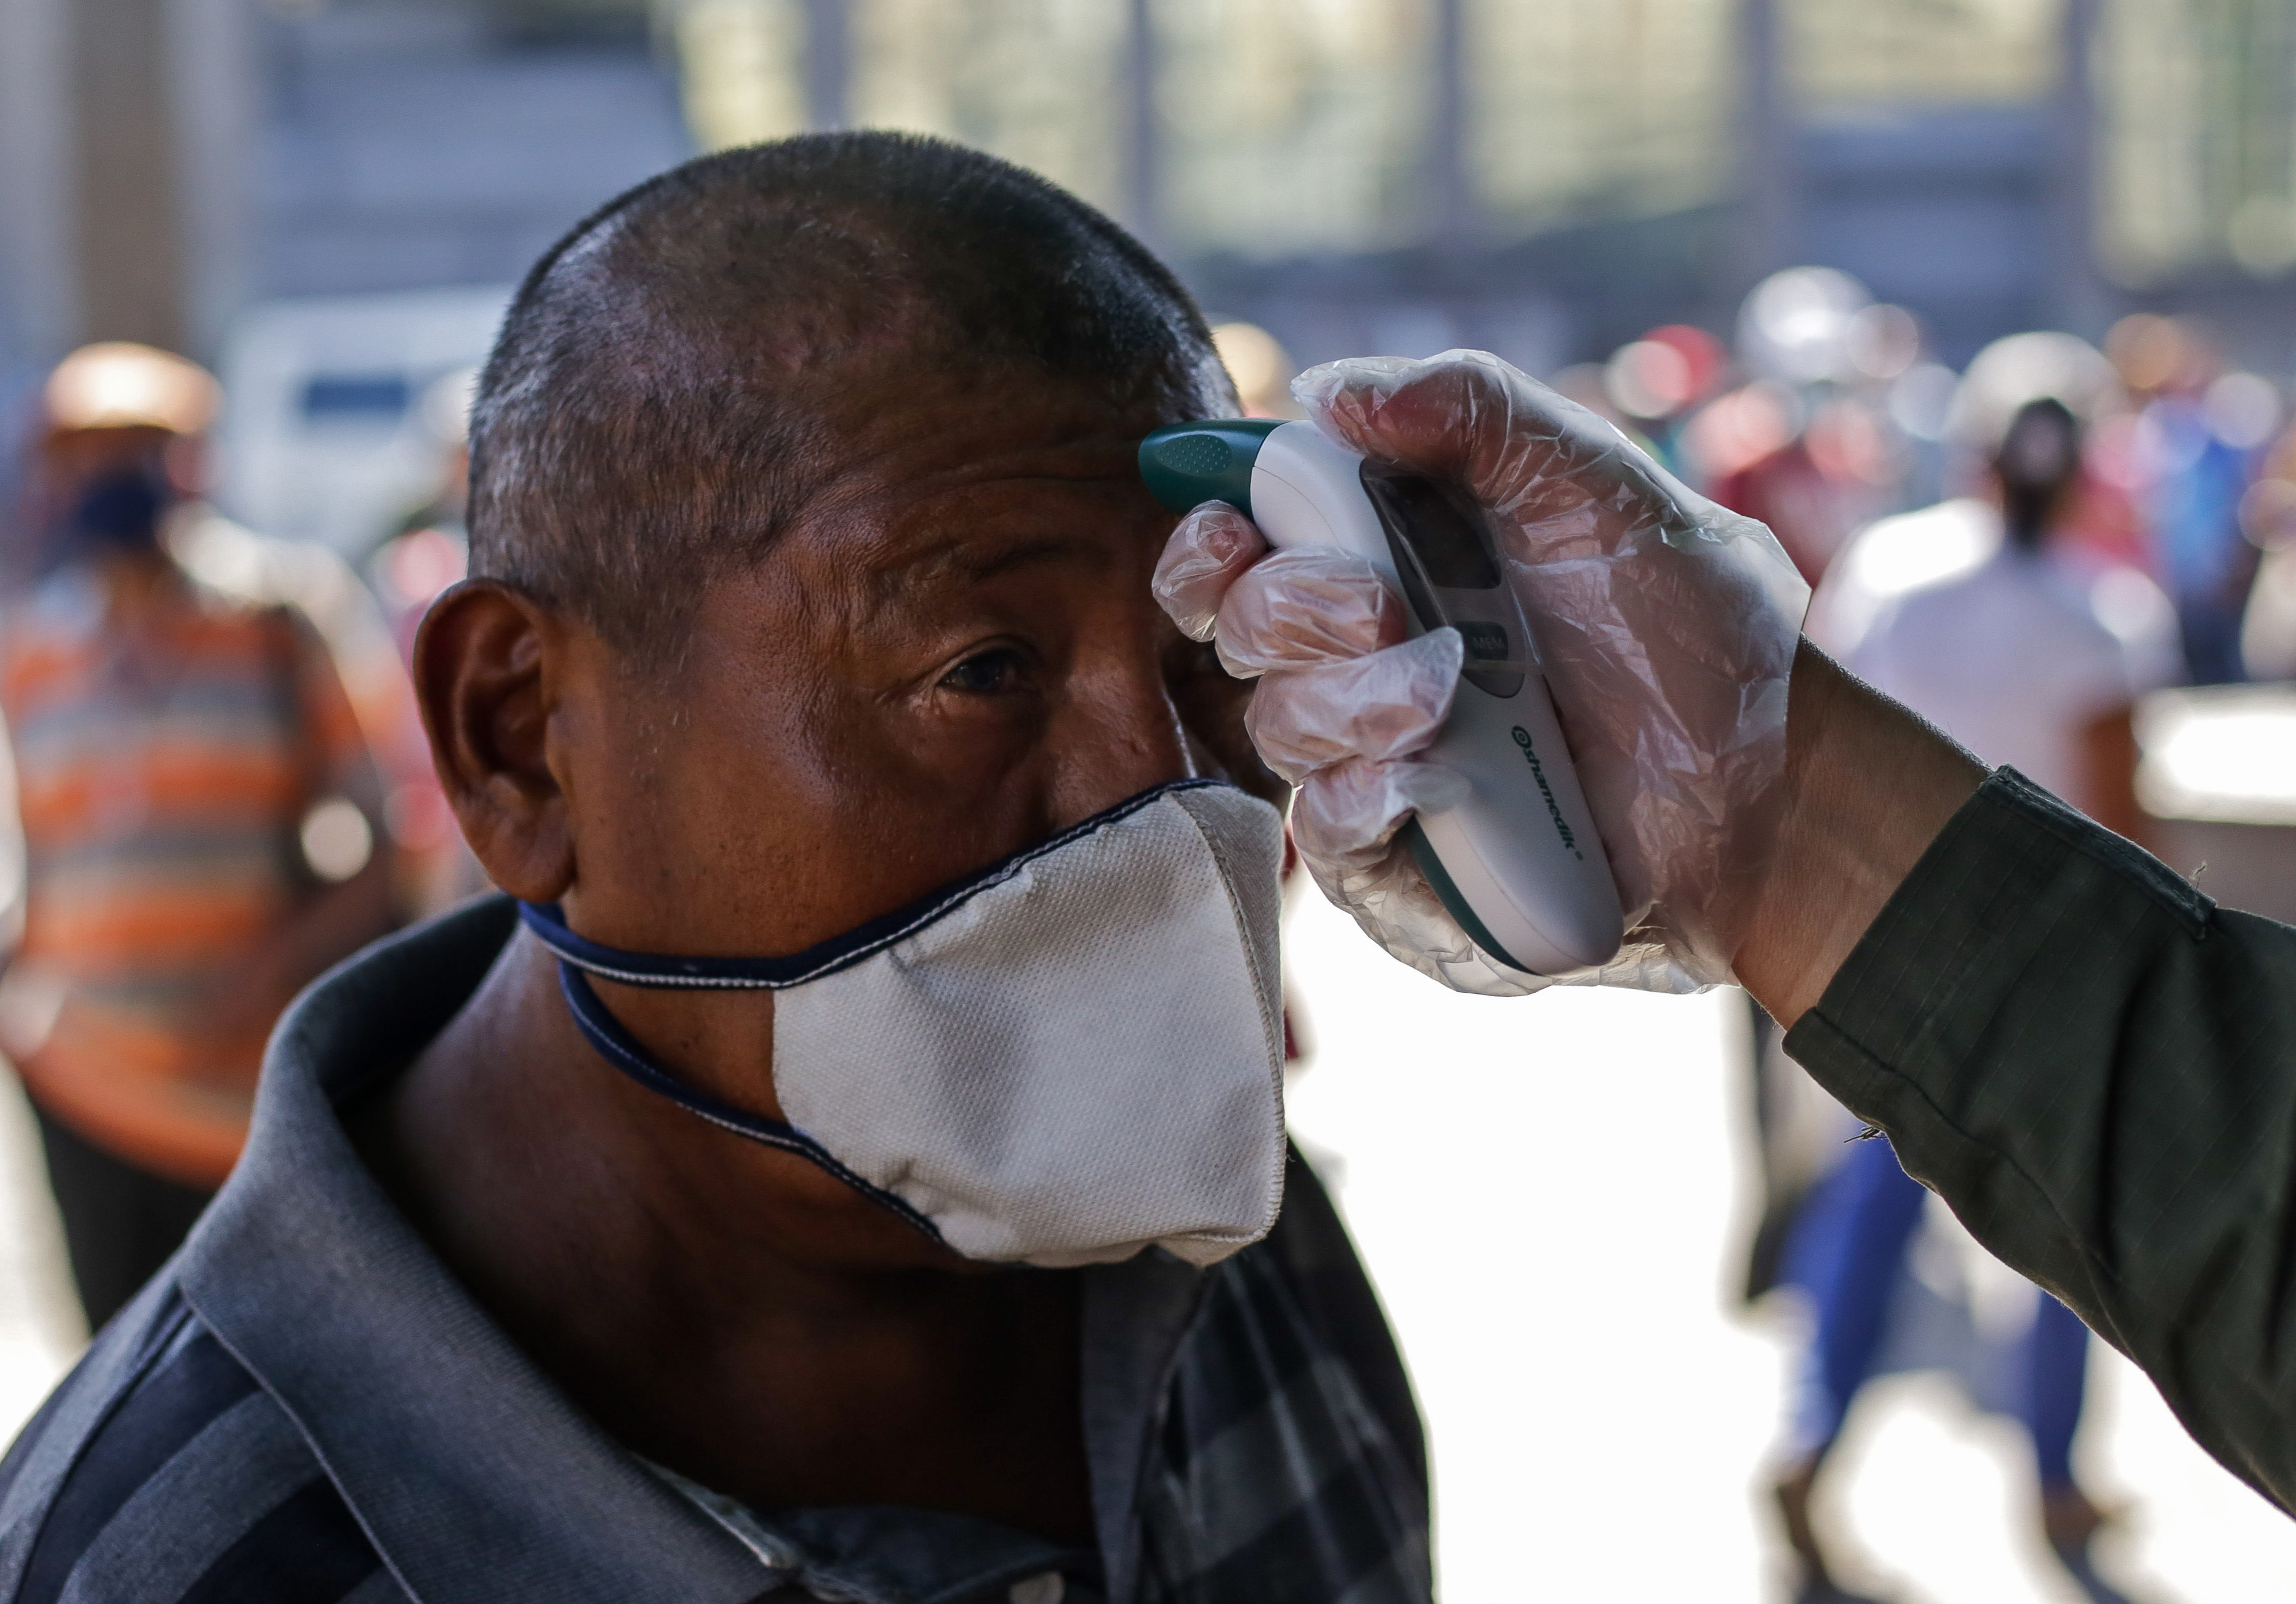 En Venezuela, hay 10 veces más probabilidades de contagio por coronavirus que hace 7 semanas